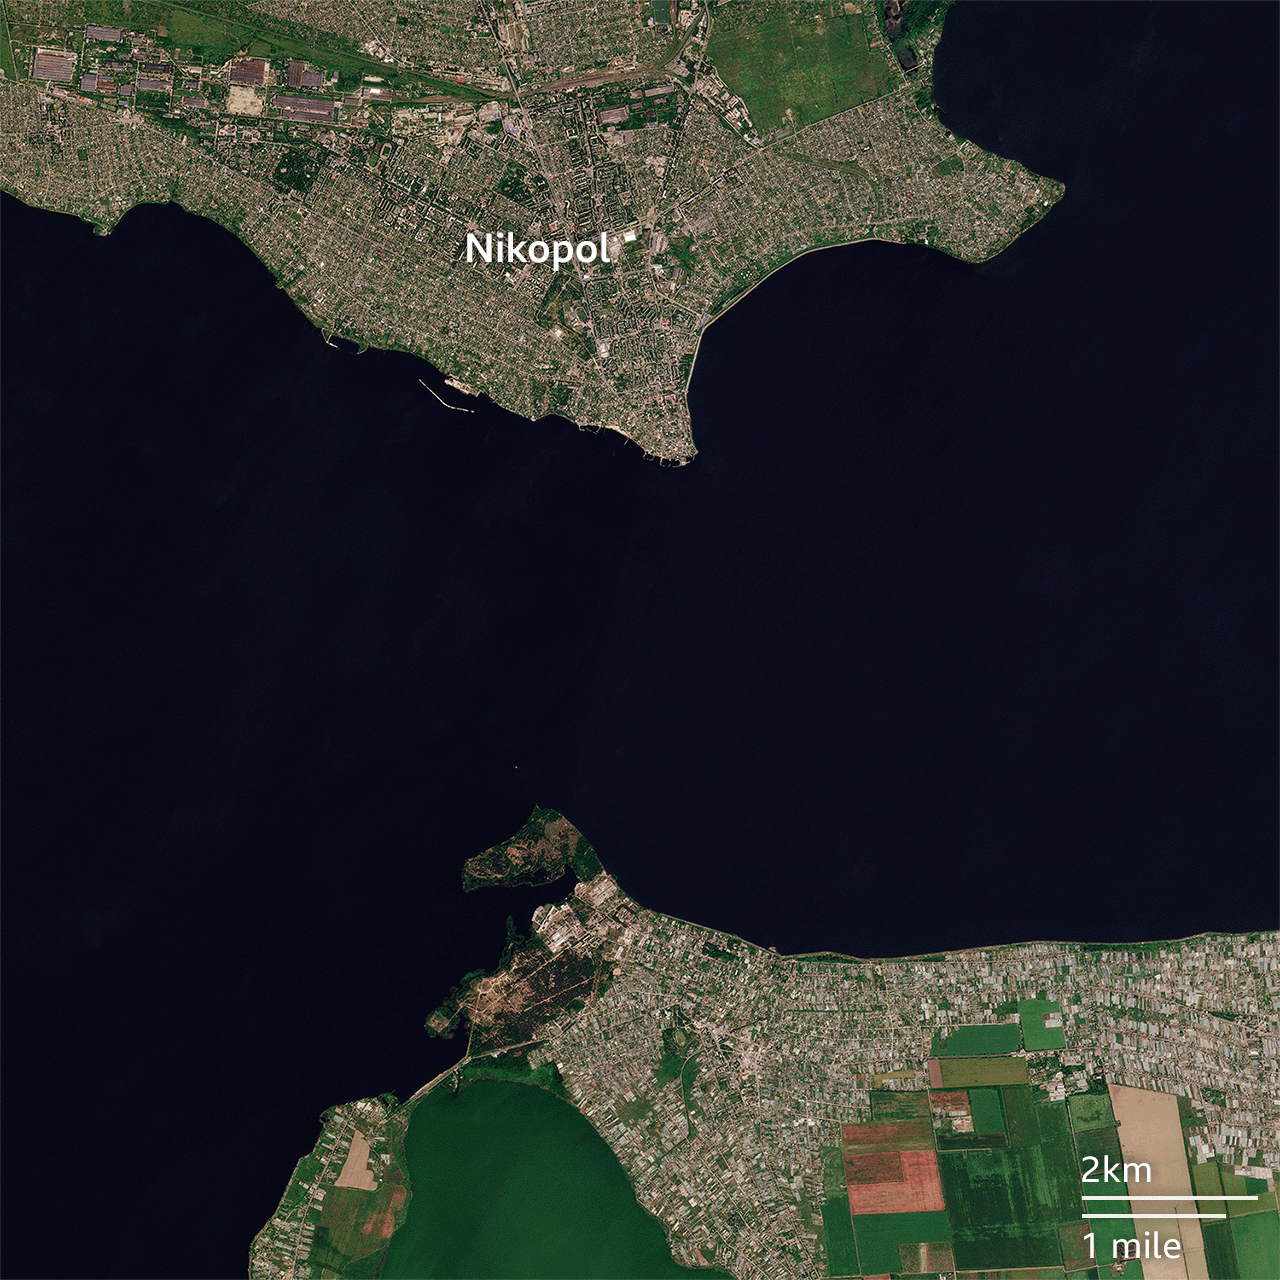 Последствия российского экоцида: спутниковые снимки показывают, что Каховское водохранилище полностью исчезло